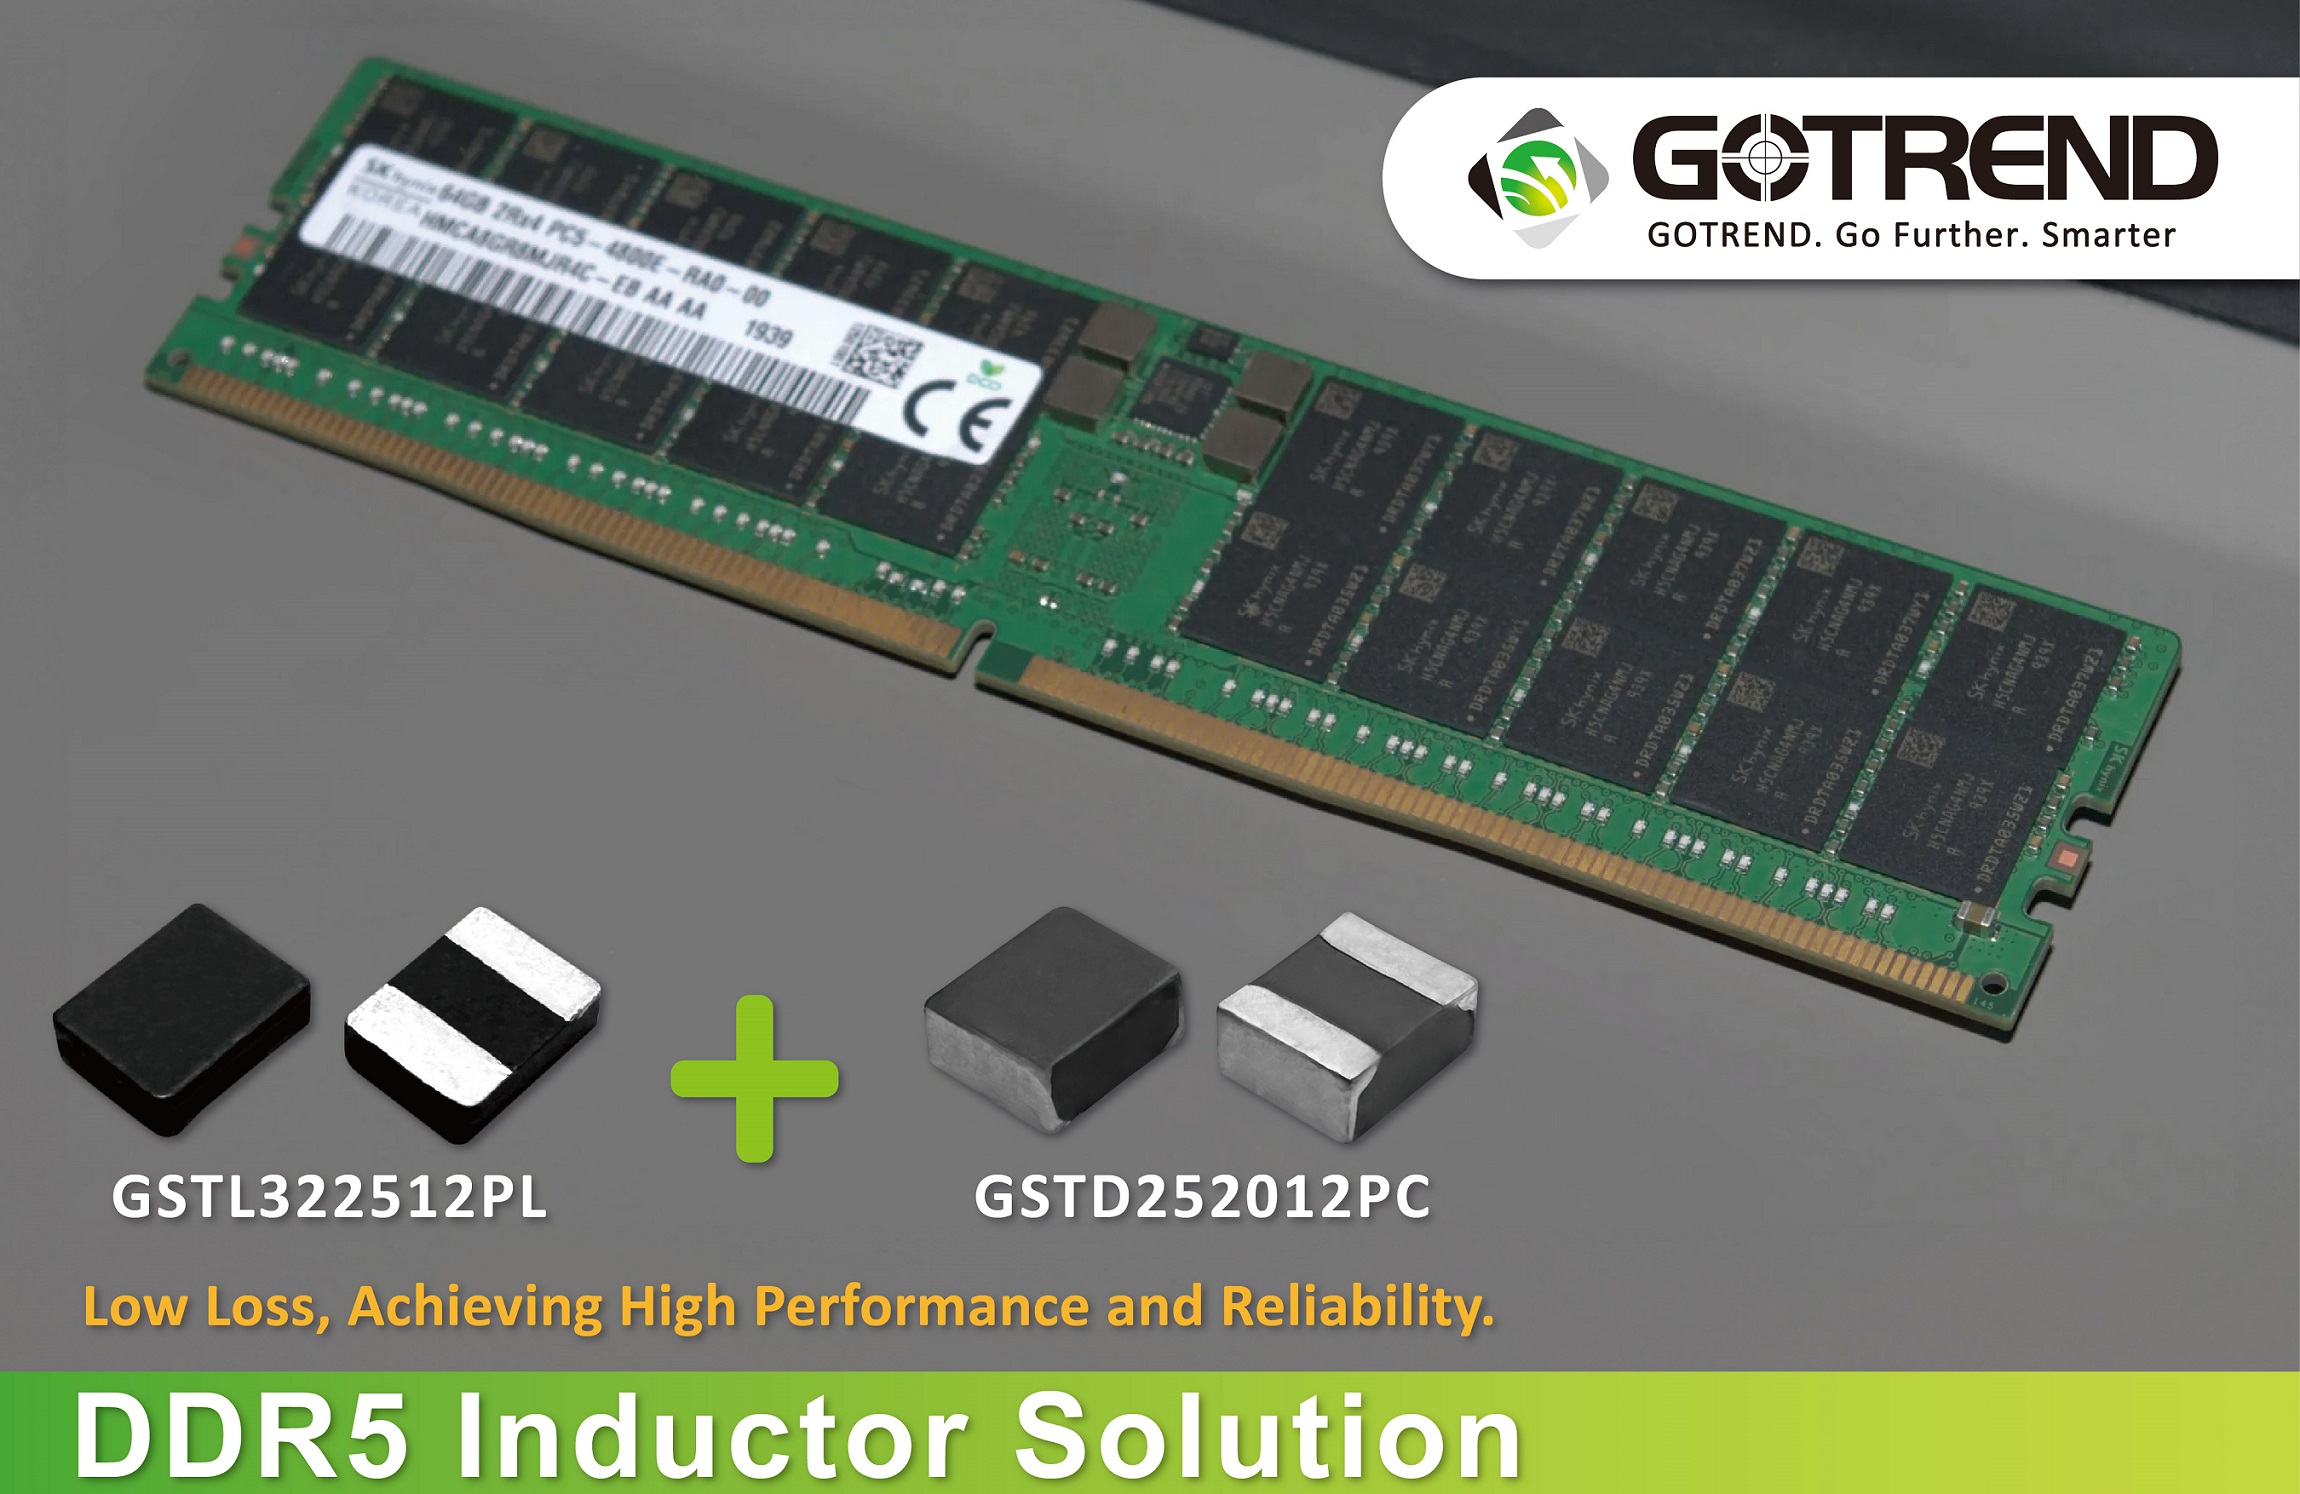 DDR5電感解決方案，低損耗，實現高性能、高可靠性